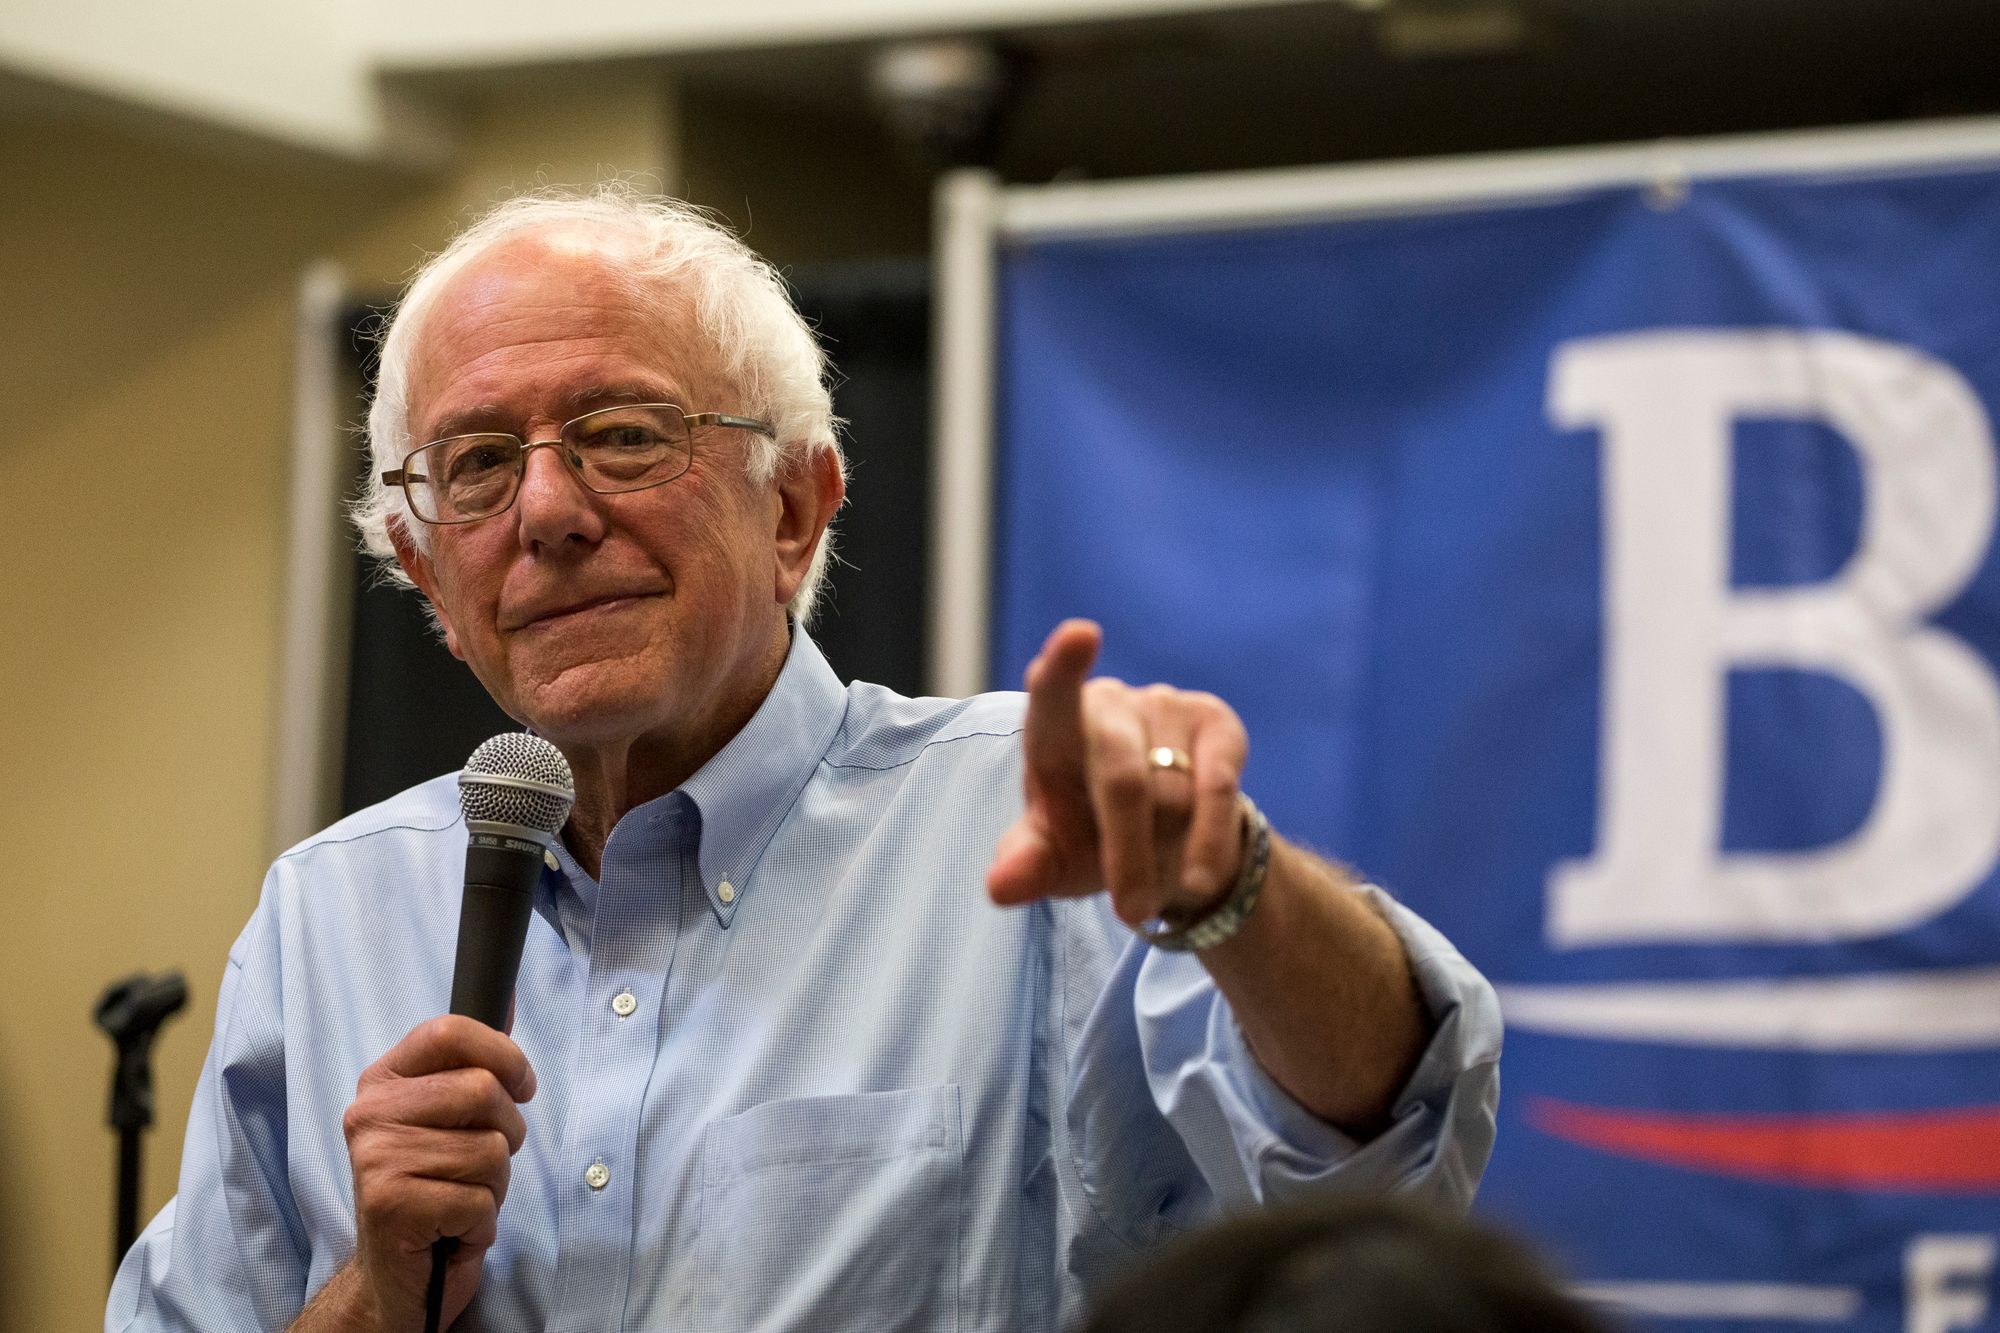 Bernie Sanders raises $18m in Q2 | Total Cash-In-Hand is $24m